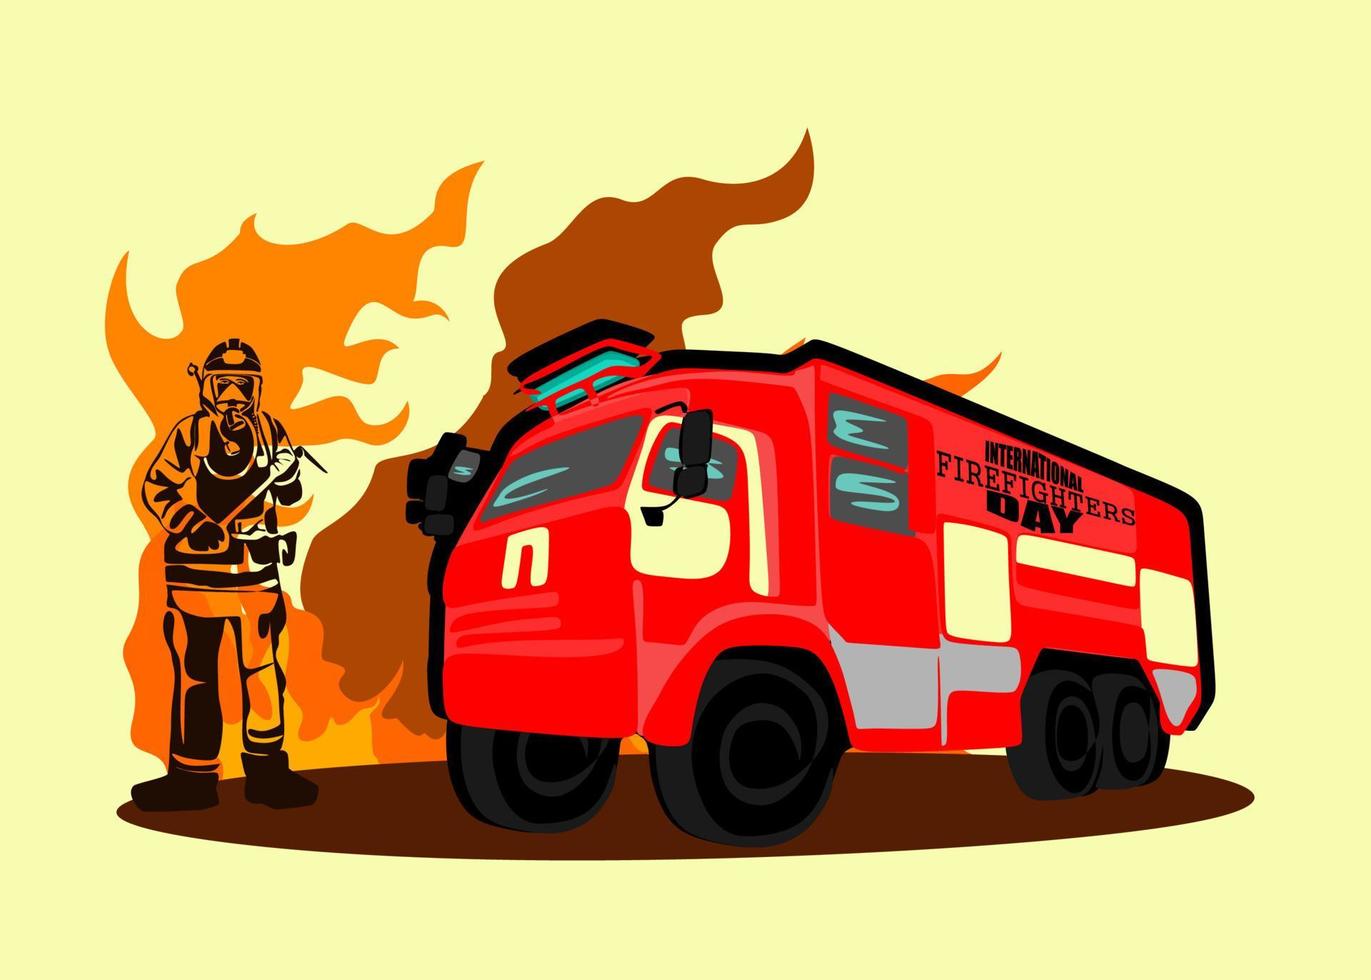 projeto de conceito do dia internacional dos bombeiros. ilustração vetorial de silhueta de bombeiro, como um banner, pôster ou modelo para o dia internacional dos bombeiros com letras, fogo e chamas. vetor